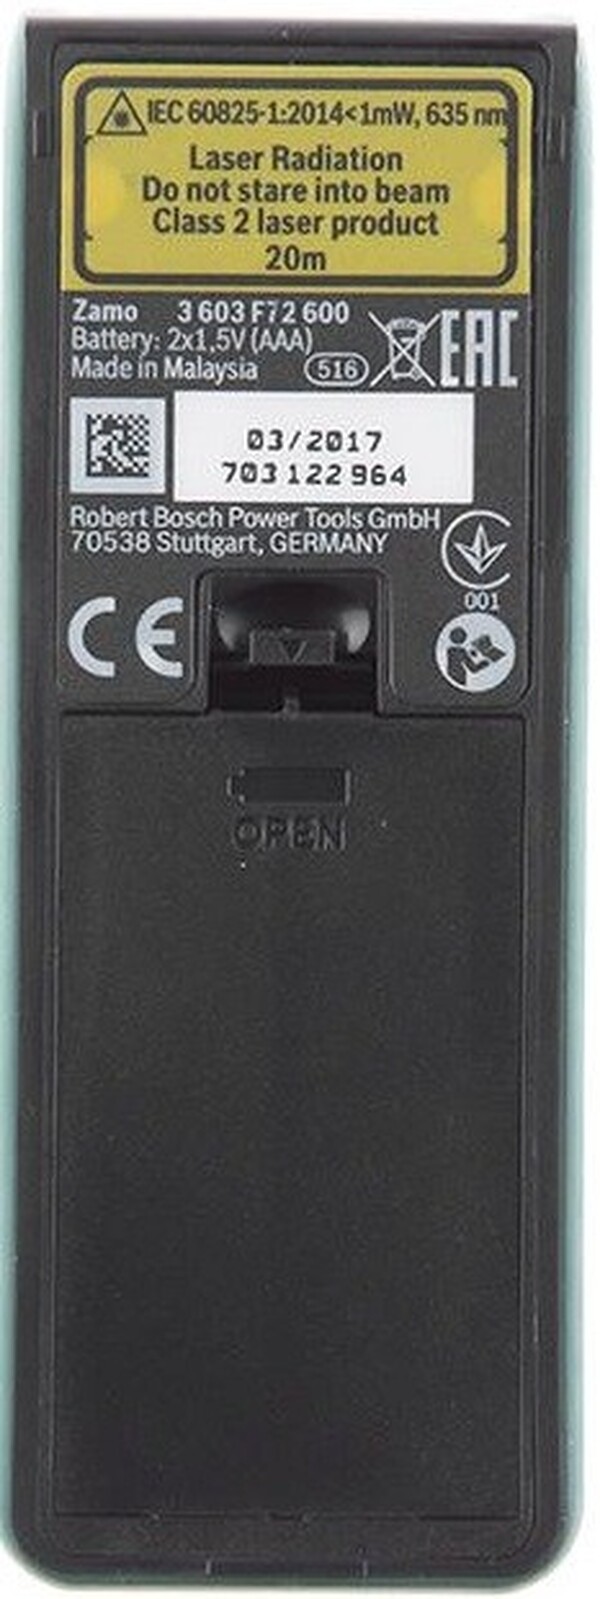 Дальномер лазерный Bosch Zamo 0603672621